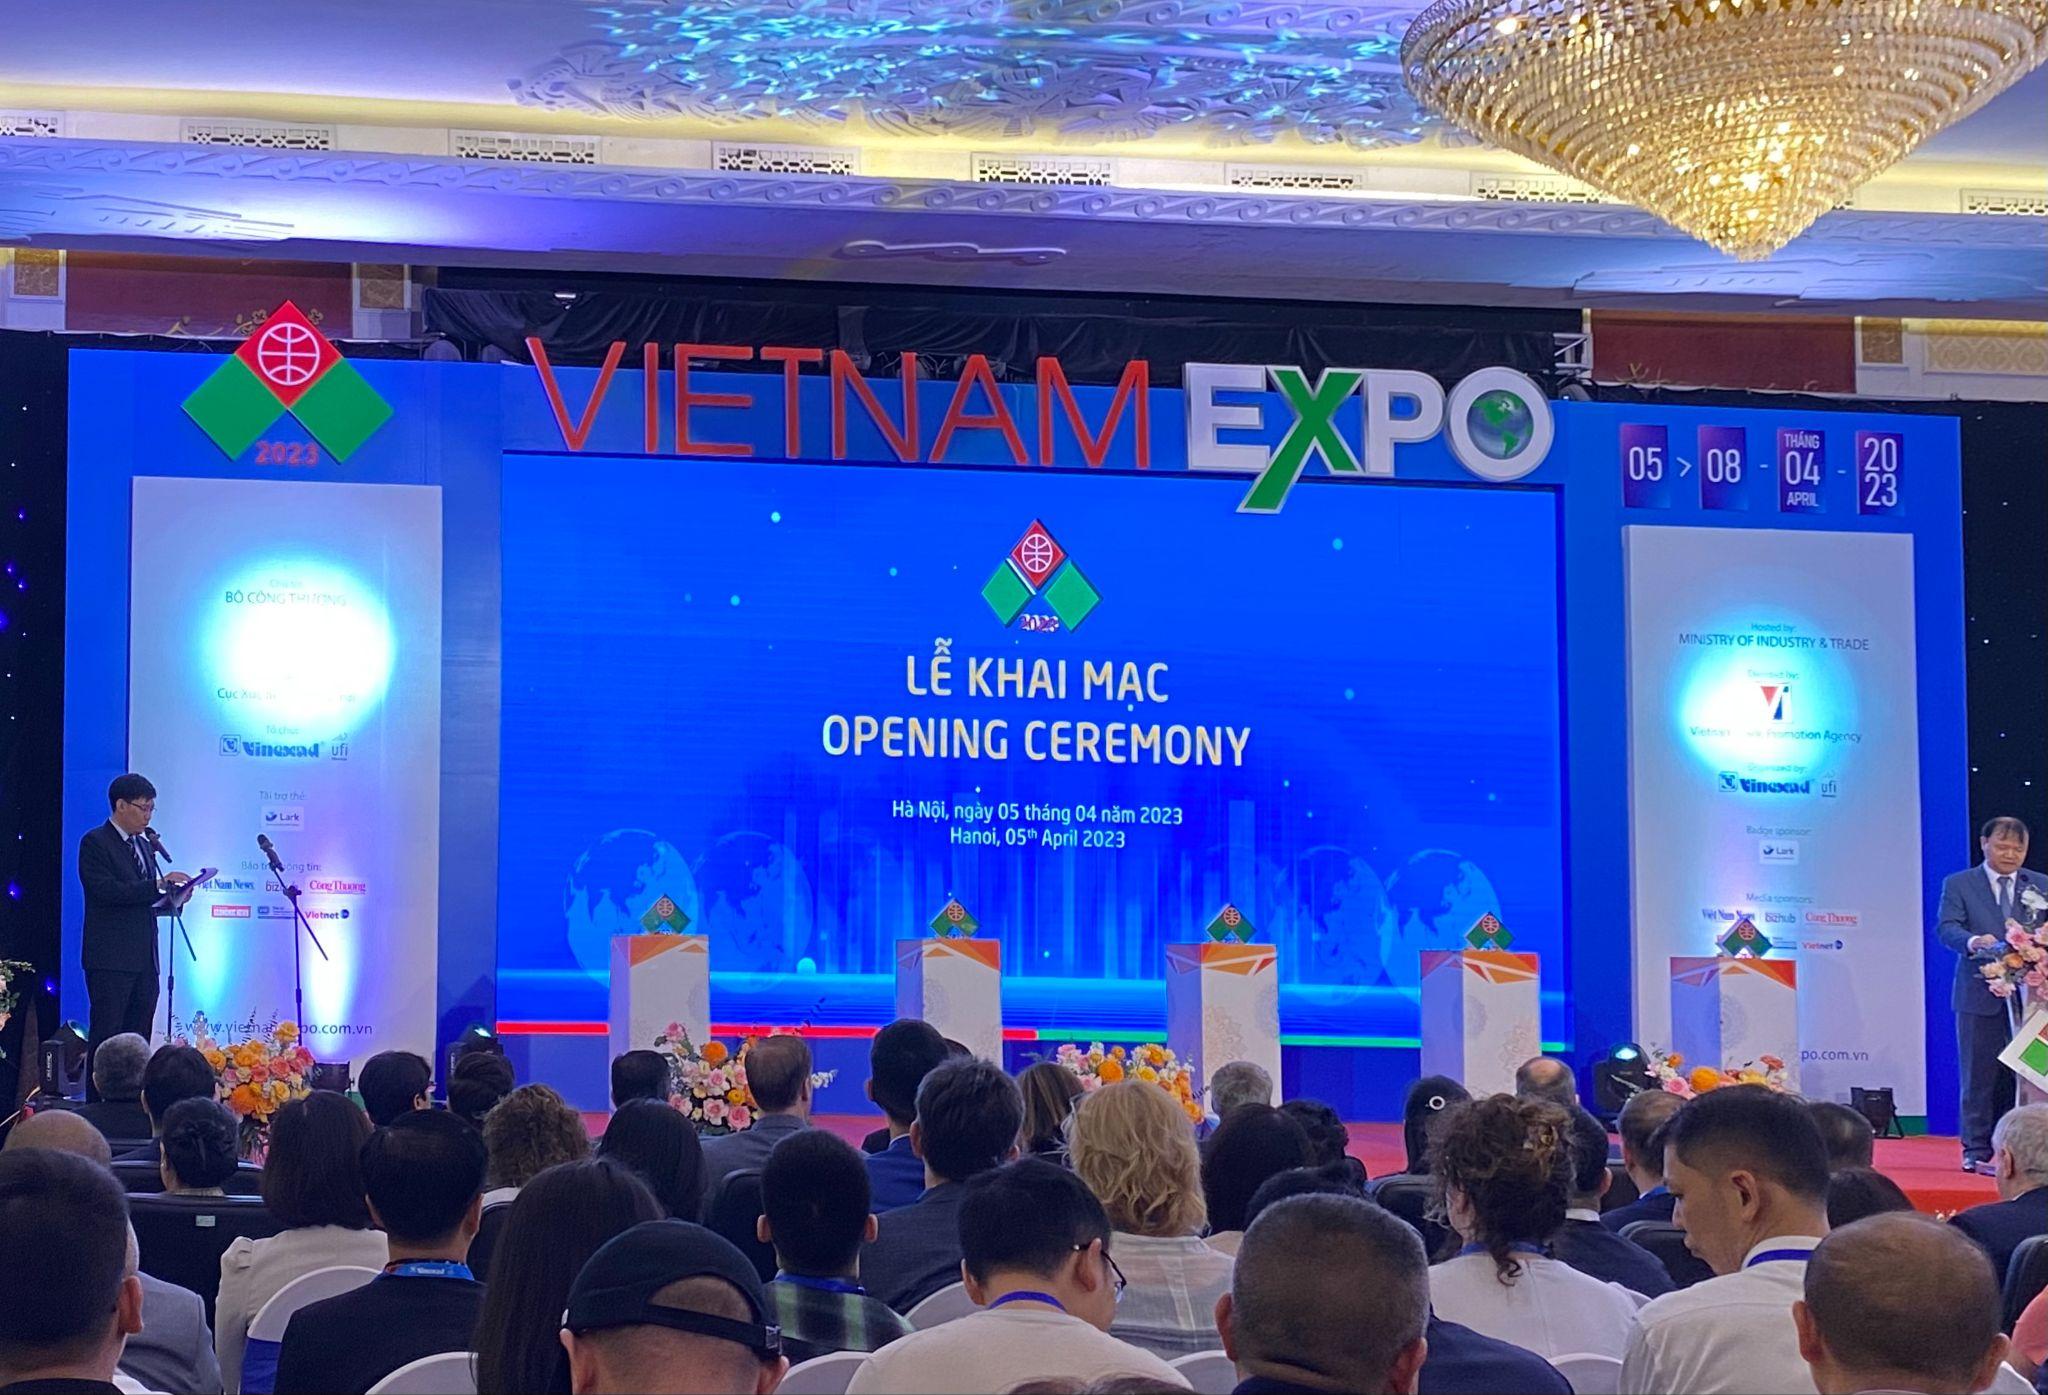 Cơ hội cho doanh nghiệp Việt bắt kịp xu hướng Digital Workplace khi đến với Vietnam Expo 2023 - 1